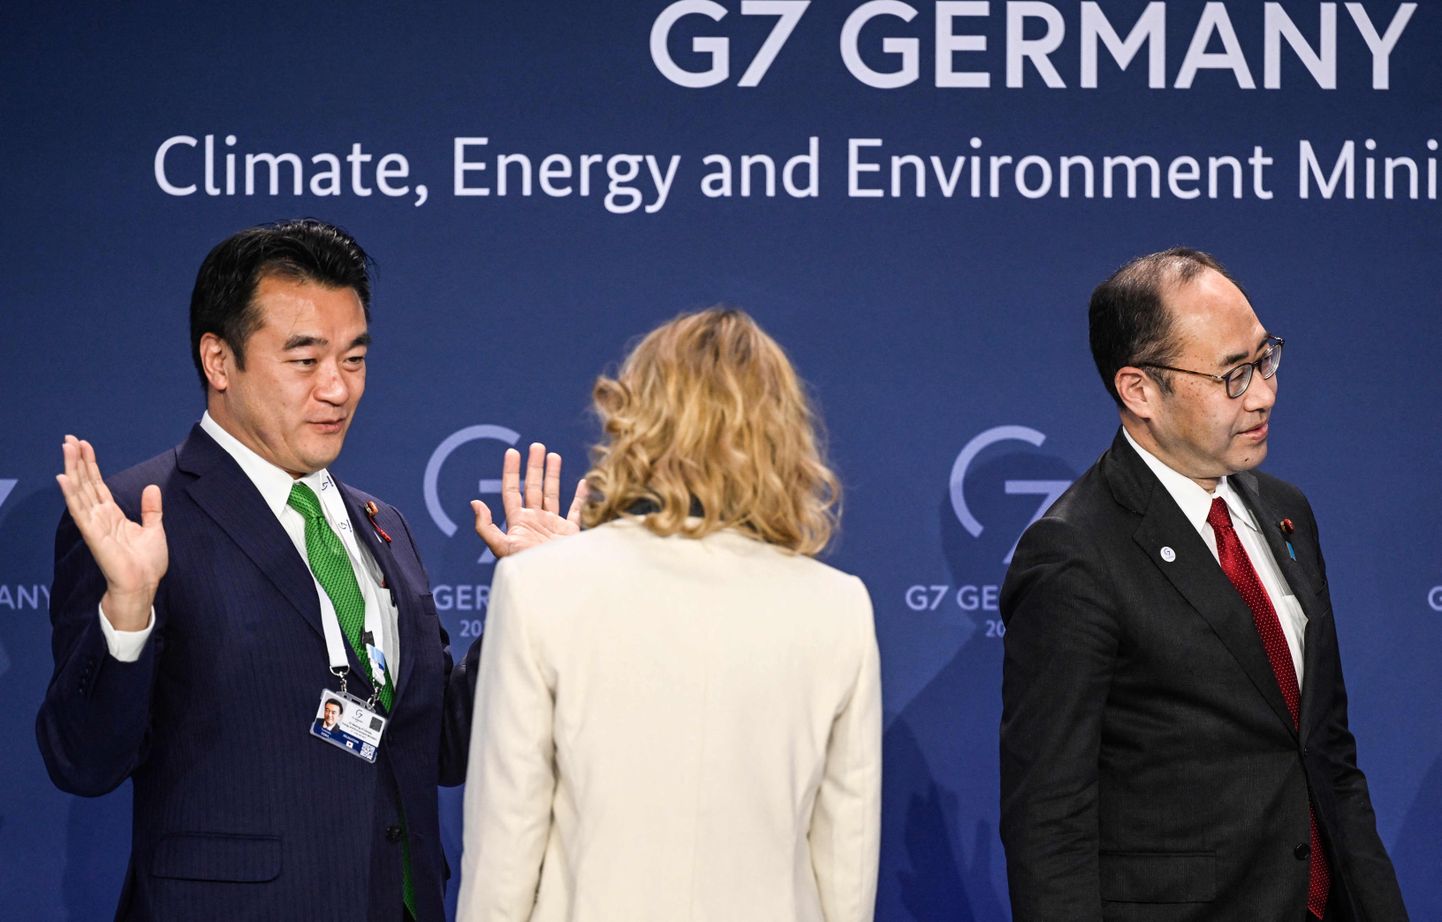 Jaapani riigiminister keskkonnaalastes küsimustes Toshitaka Ooka räägib Saksamaa keskkonna-, loodushoiu-, tuumaohutus- ja tarbijakaitseministri Steffi Lemkega, nende kõrval Jaapani majandus-, kaubandus- ja tööstusminister Kenichi Hosoda. Ministrid vestlesid pärast G7 kliima-, energia- ja keskkonnaministrite tippkohtumise pressikonverentsi Berliinis 27. mail.